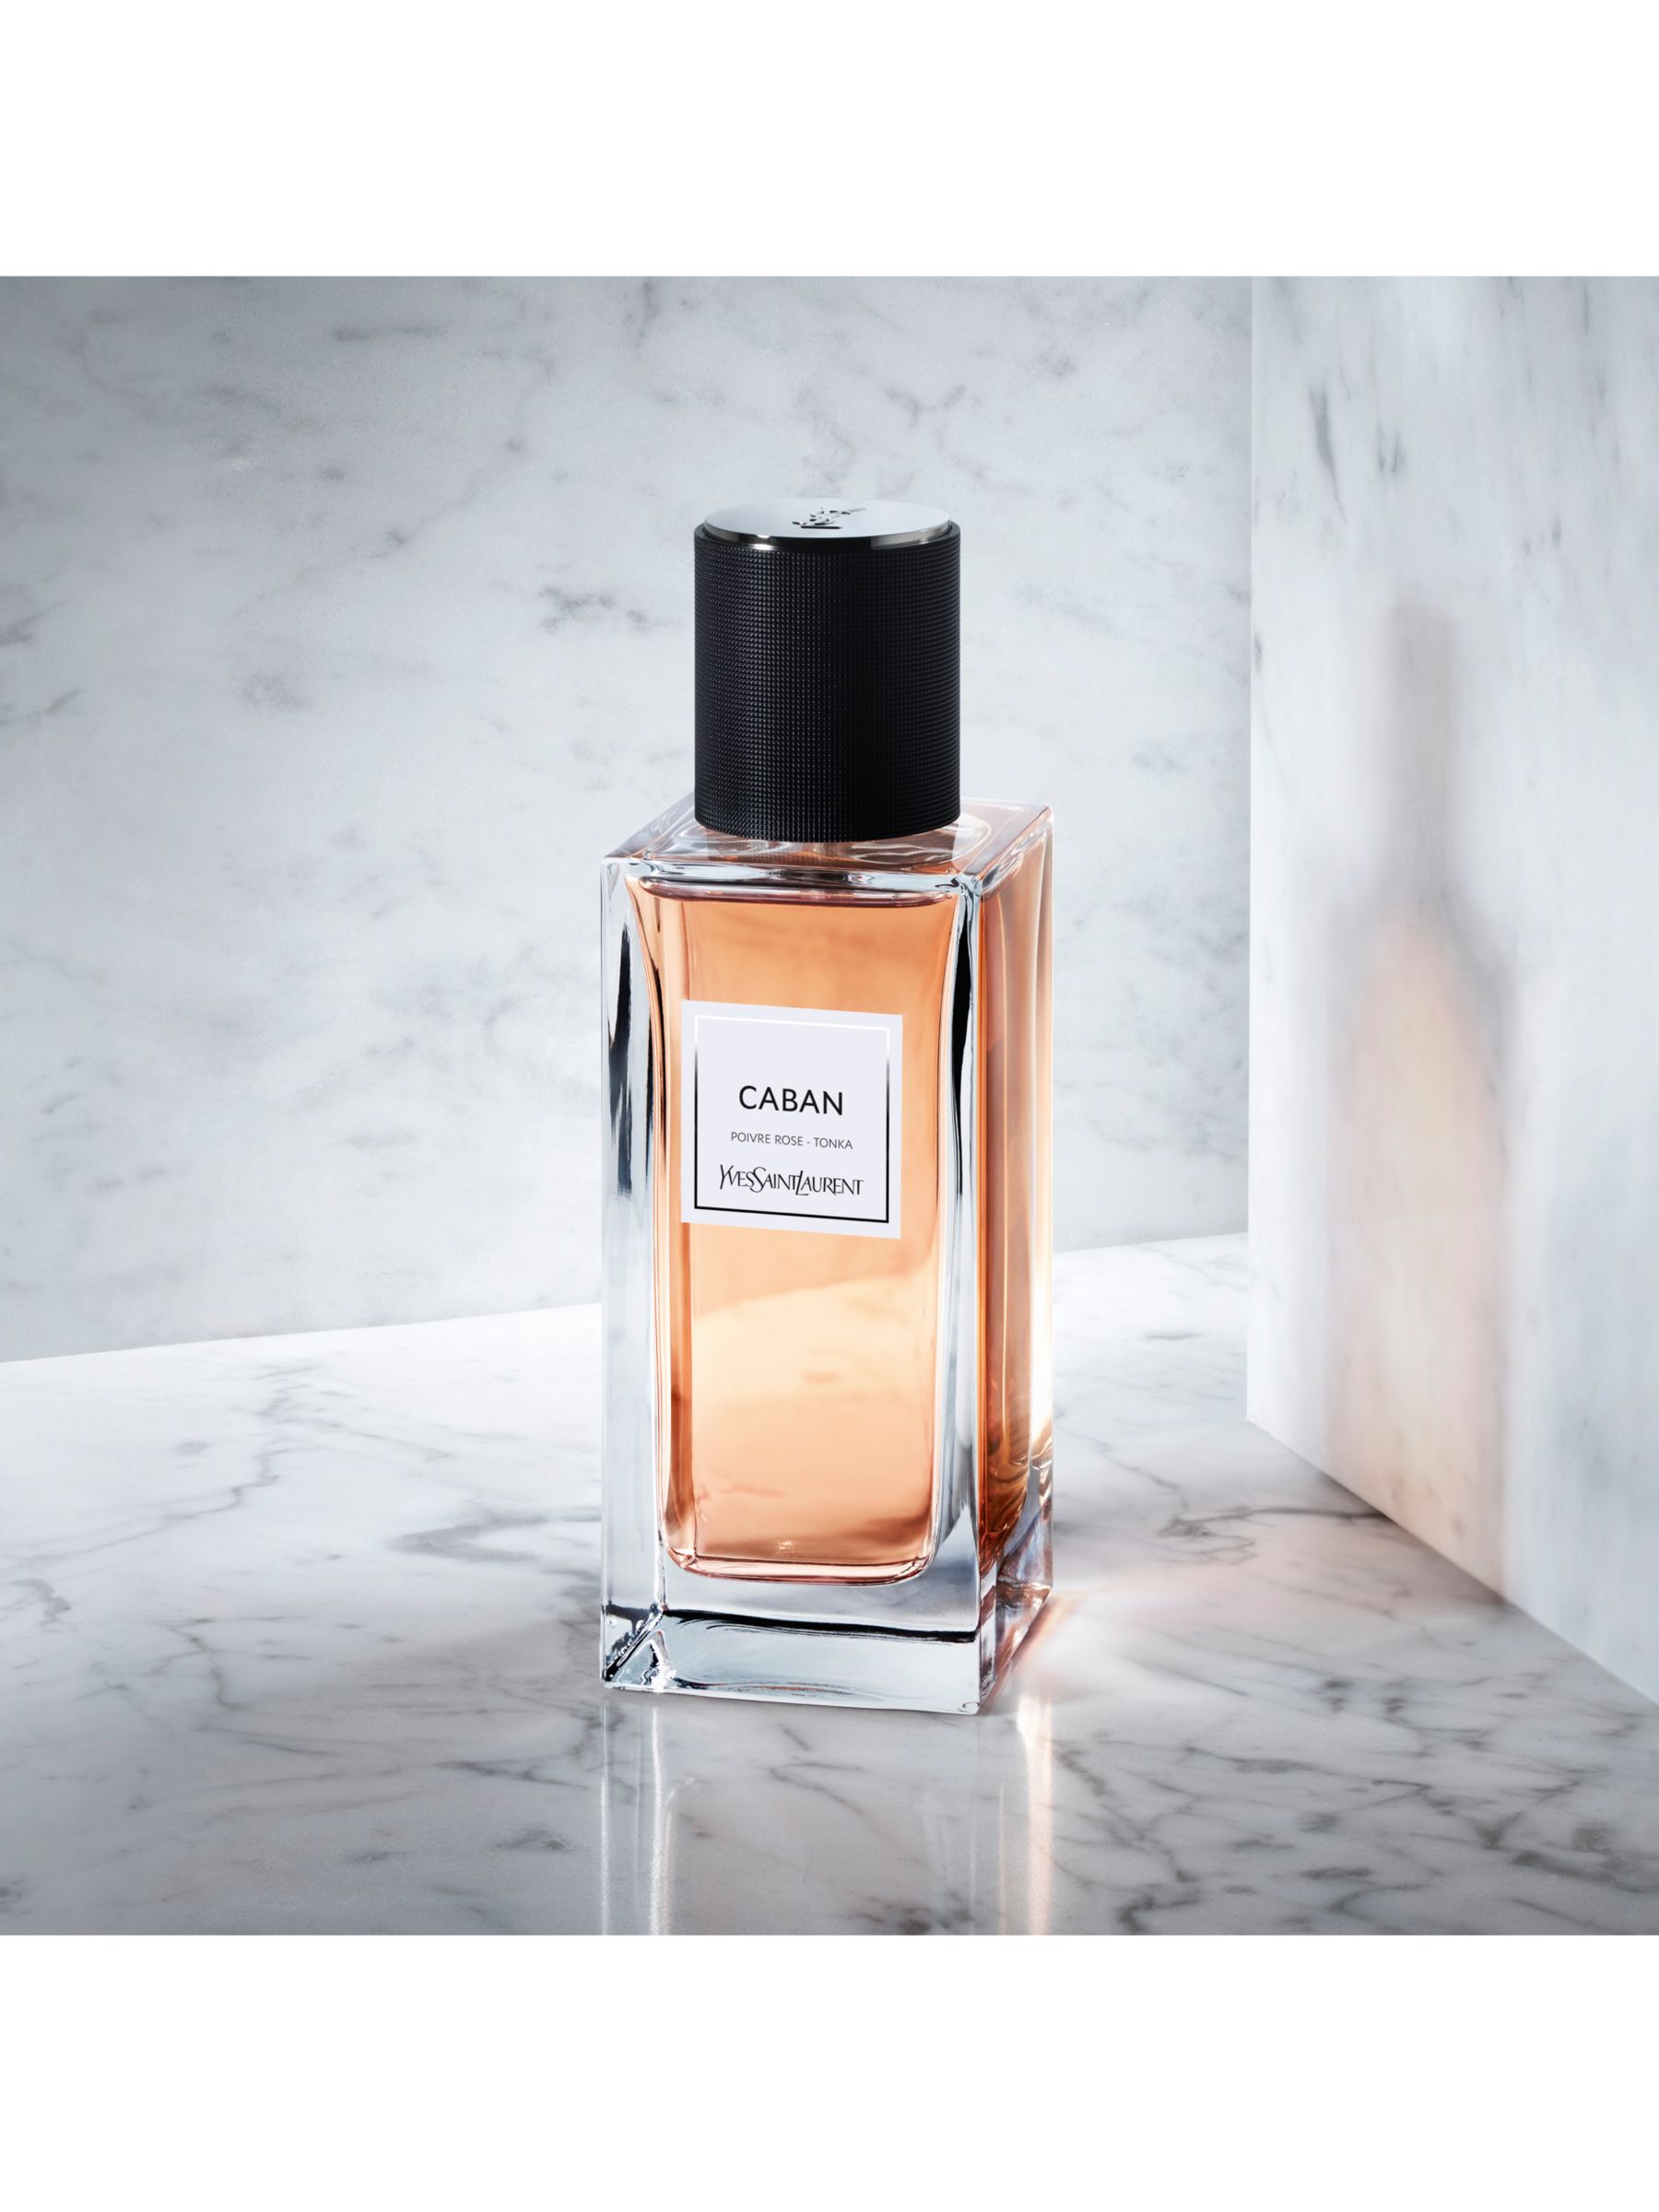 Yves Saint Laurent Caban Eau de Parfum, 75ml at John Lewis & Partners